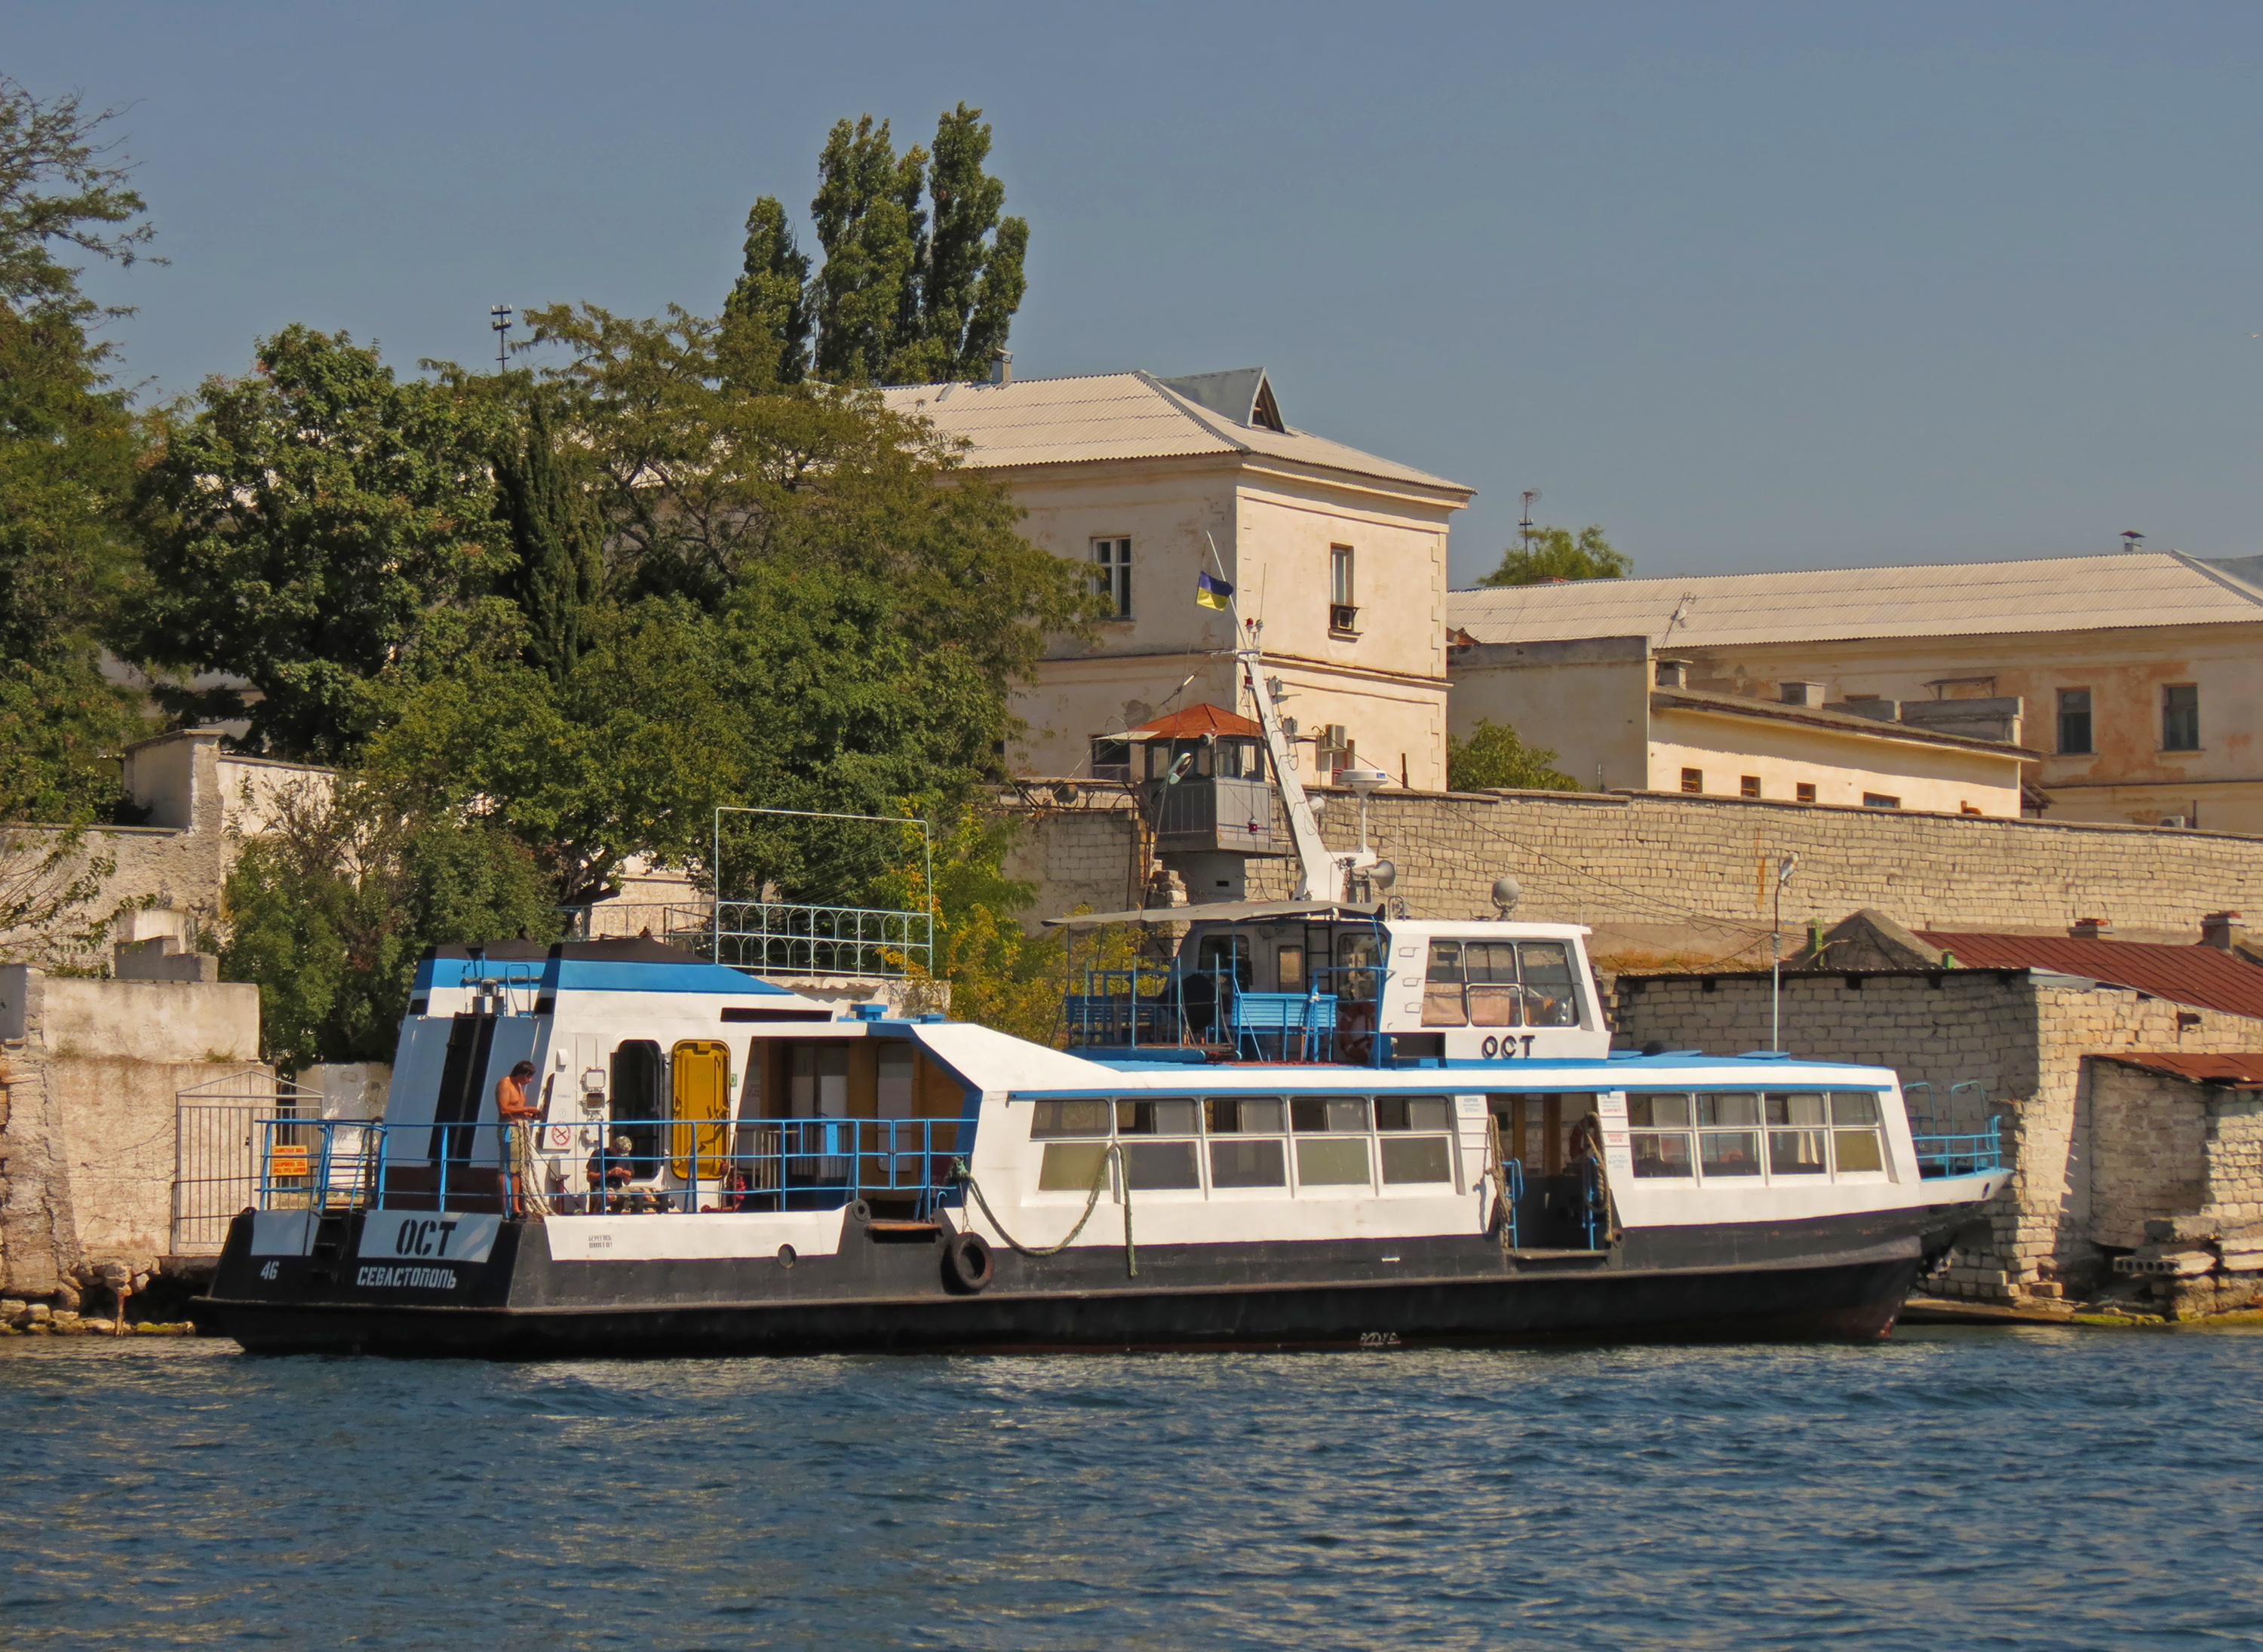 2012-09-14 Севастополь. Пассажирское судно «Ост»